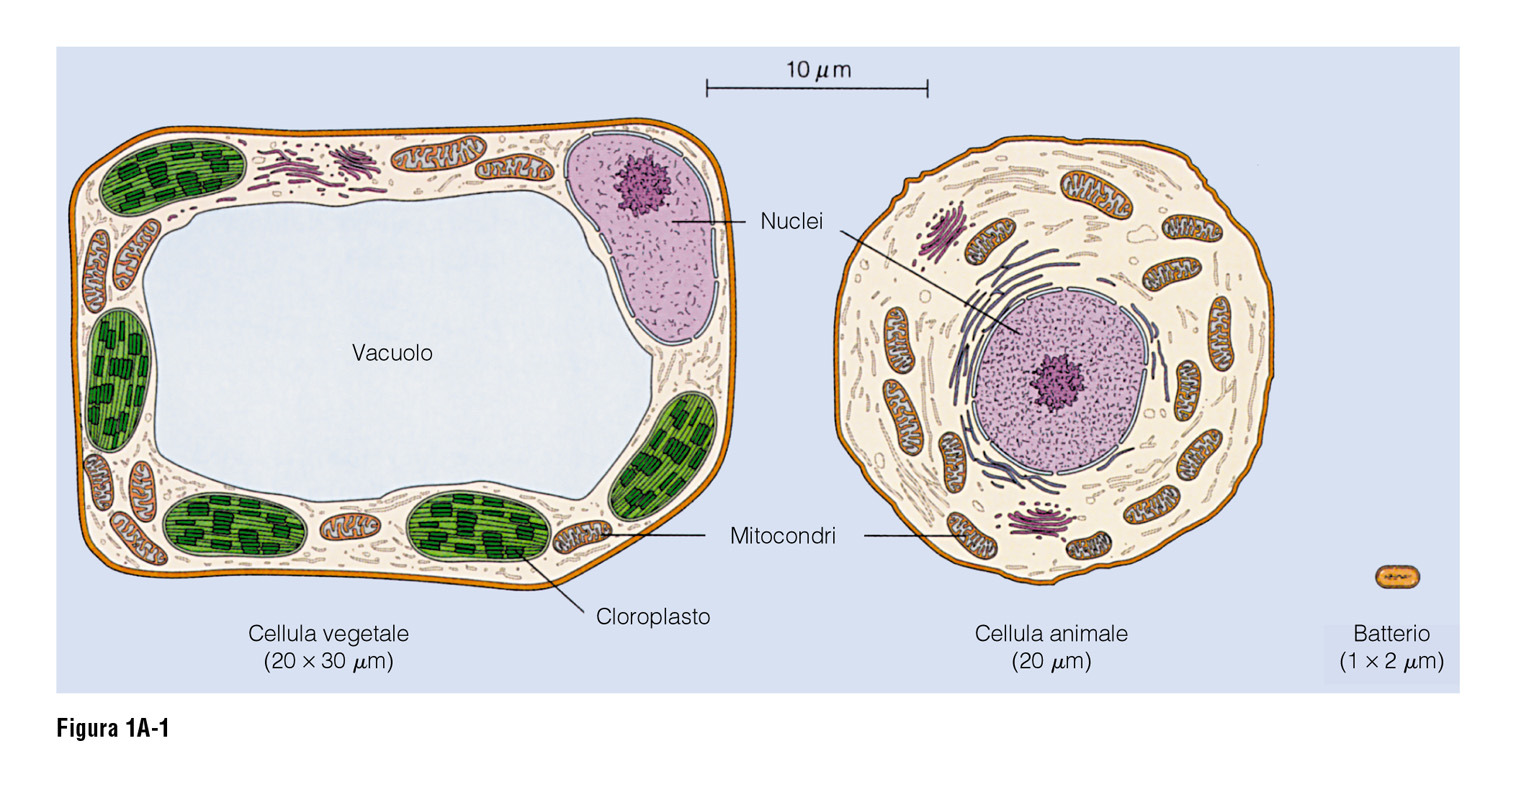 02/12/2014 Cellula procariotica Cellula eucariotica Le cellule si